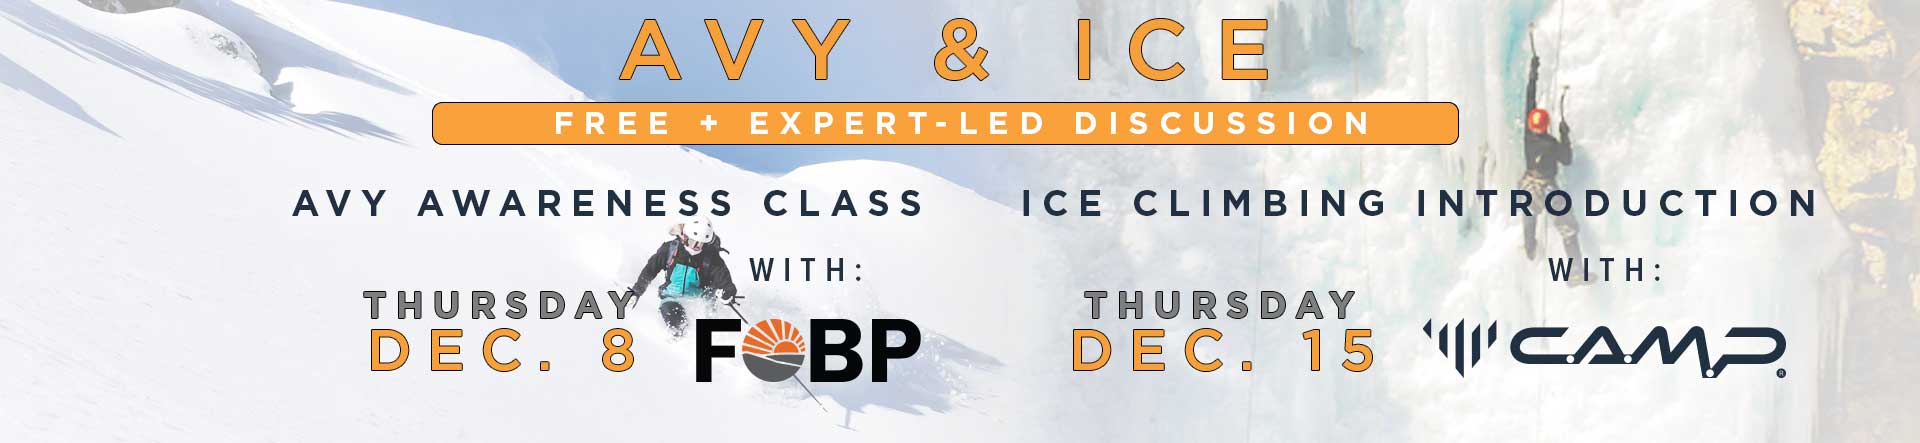 Avy & Ice Classes